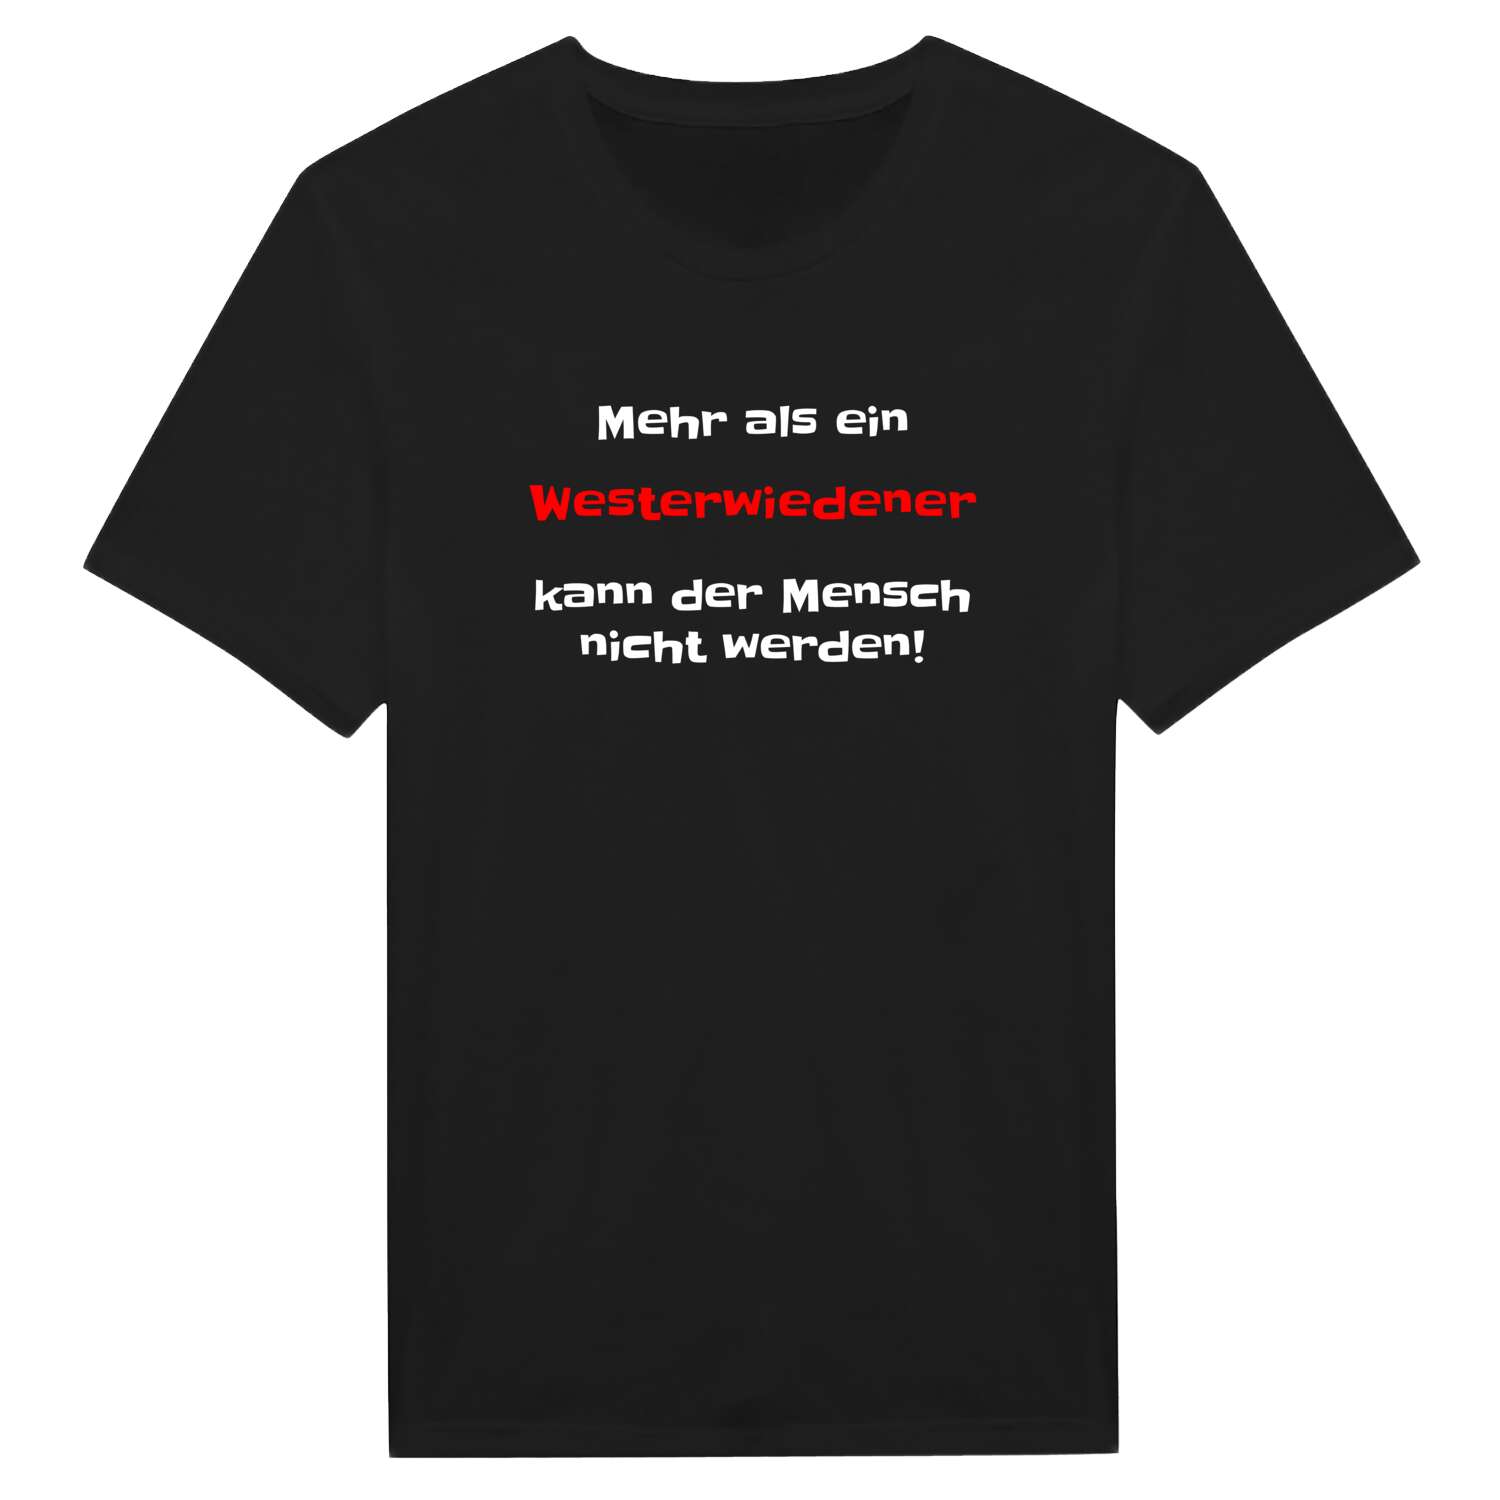 Westerwiede T-Shirt »Mehr als ein«